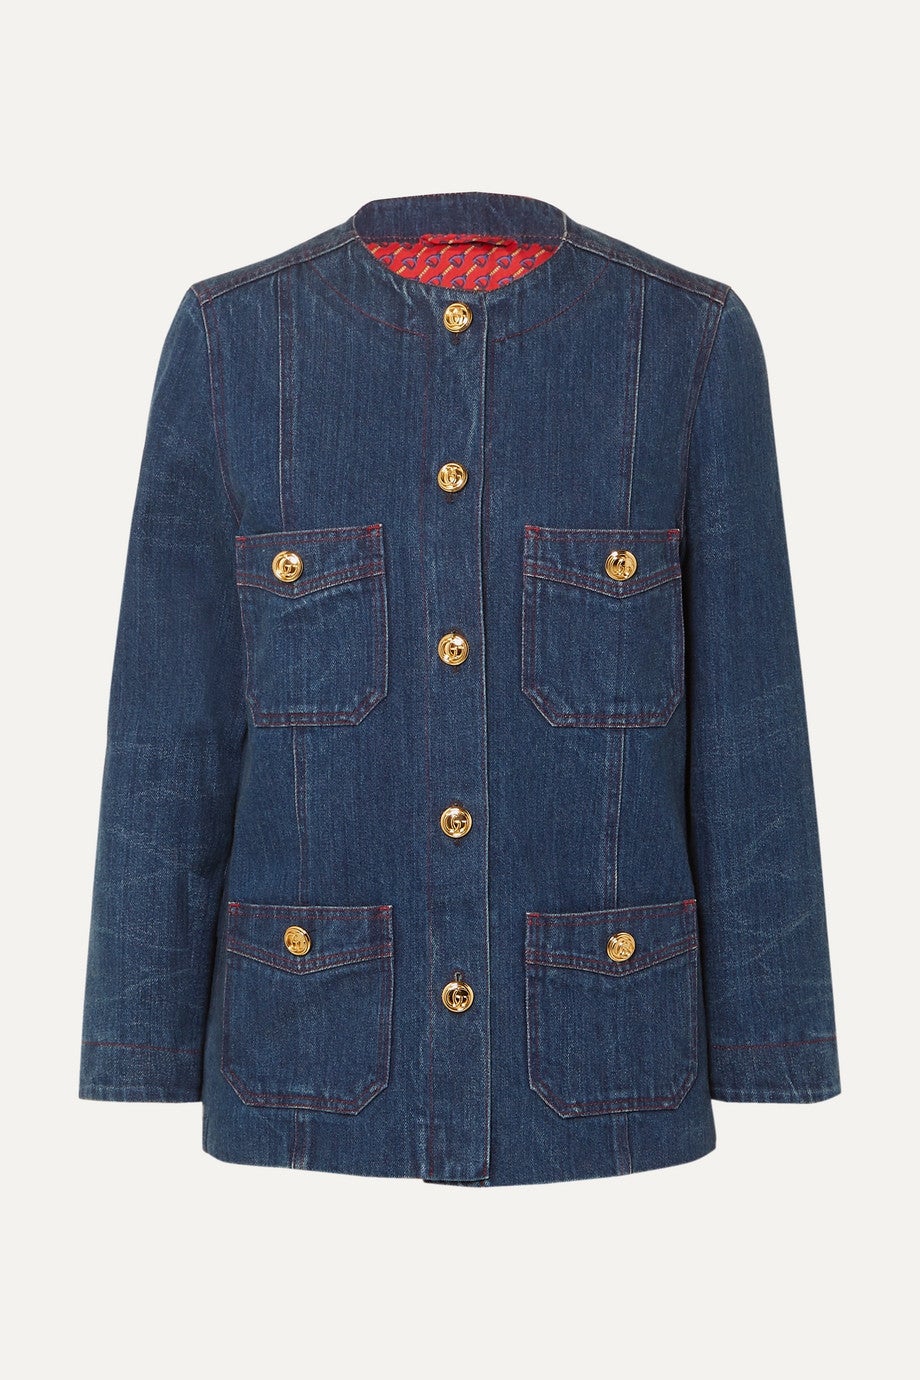 Gucci + Button-embellished denim jacket